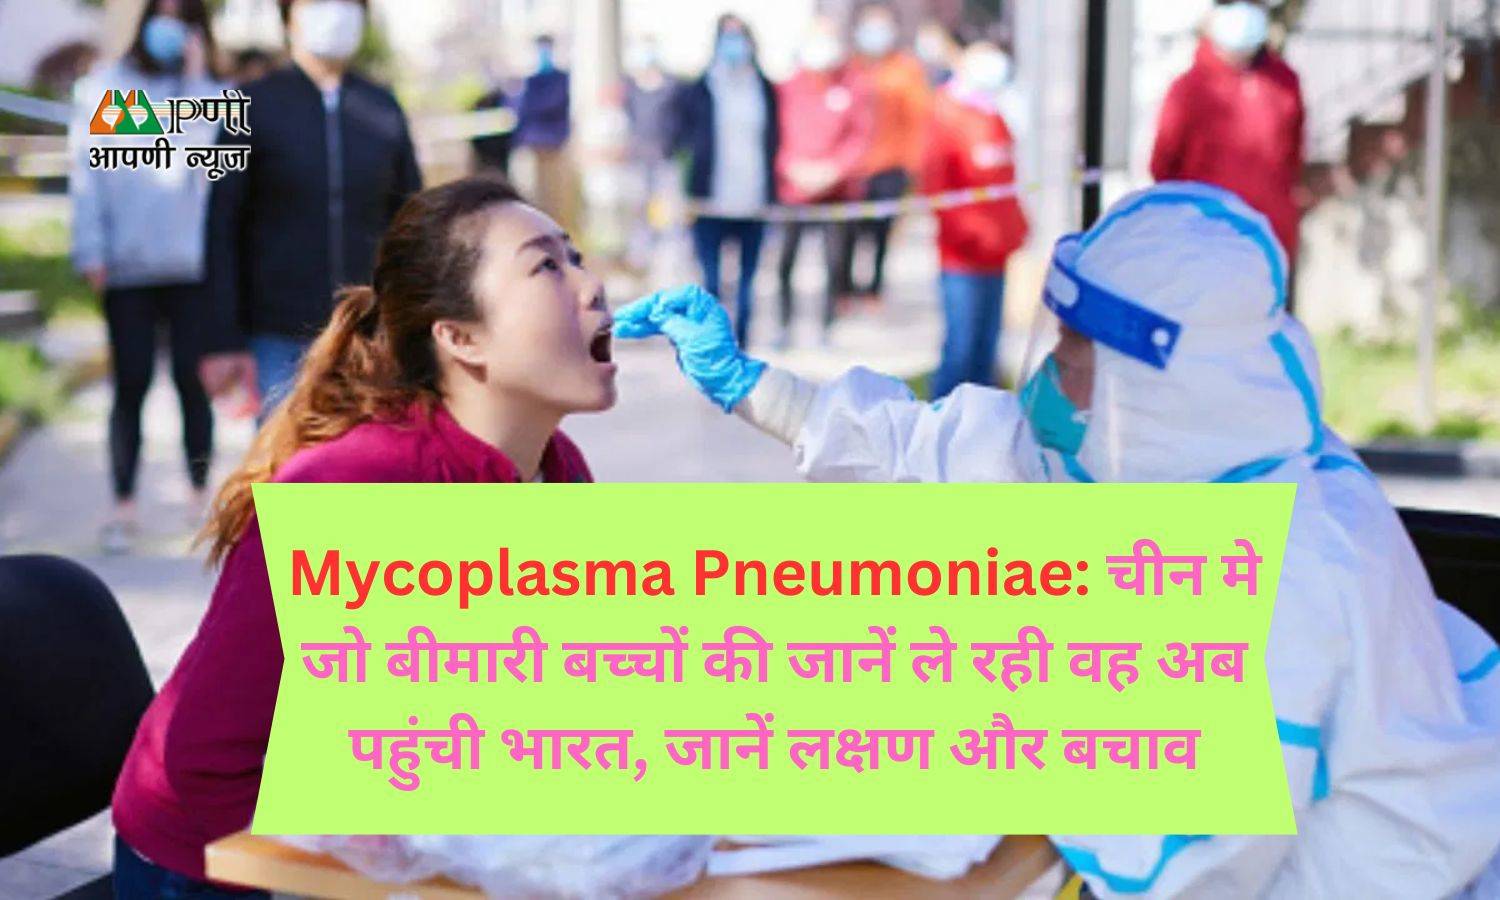 Mycoplasma Pneumoniae: चीन मे जो बीमारी बच्चों की जानें ले रही वह अब पहुंची भारत, जानें लक्षण और बचाव